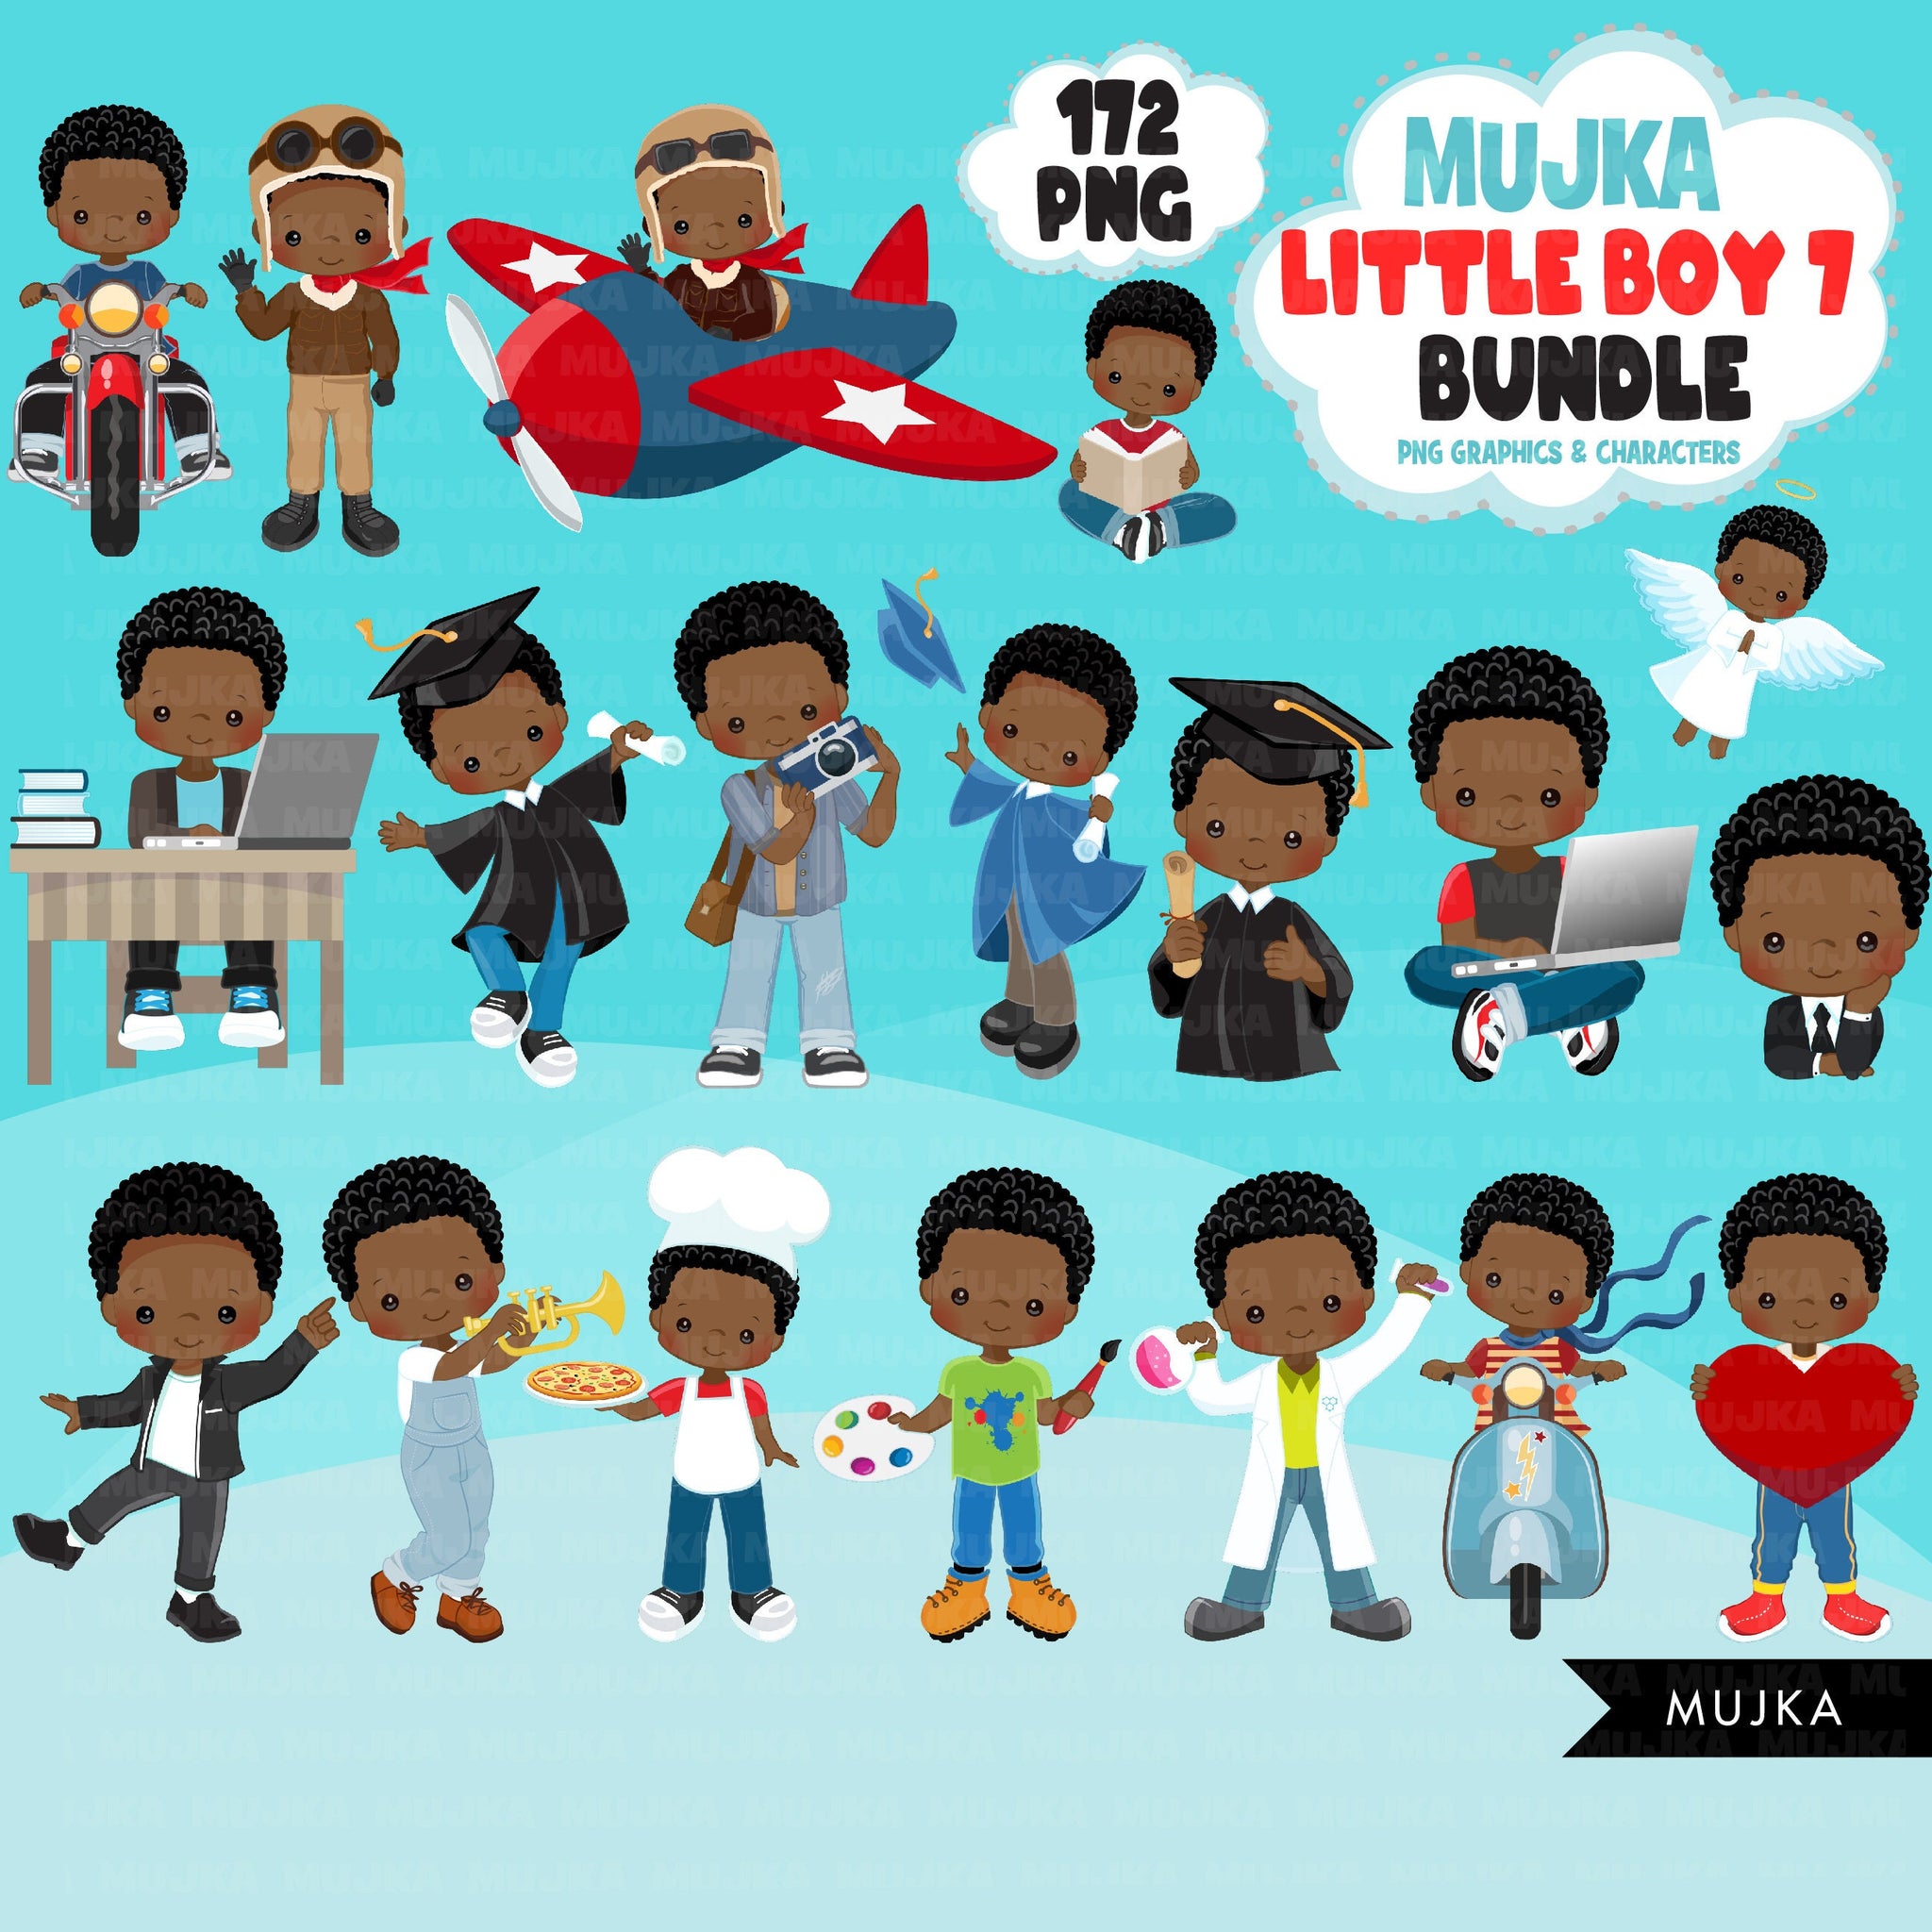 Black boy png Bundle, Black boy magic, black boy art, little boy digital stickers, cute black boy bundle, planner stickers, birthday boy